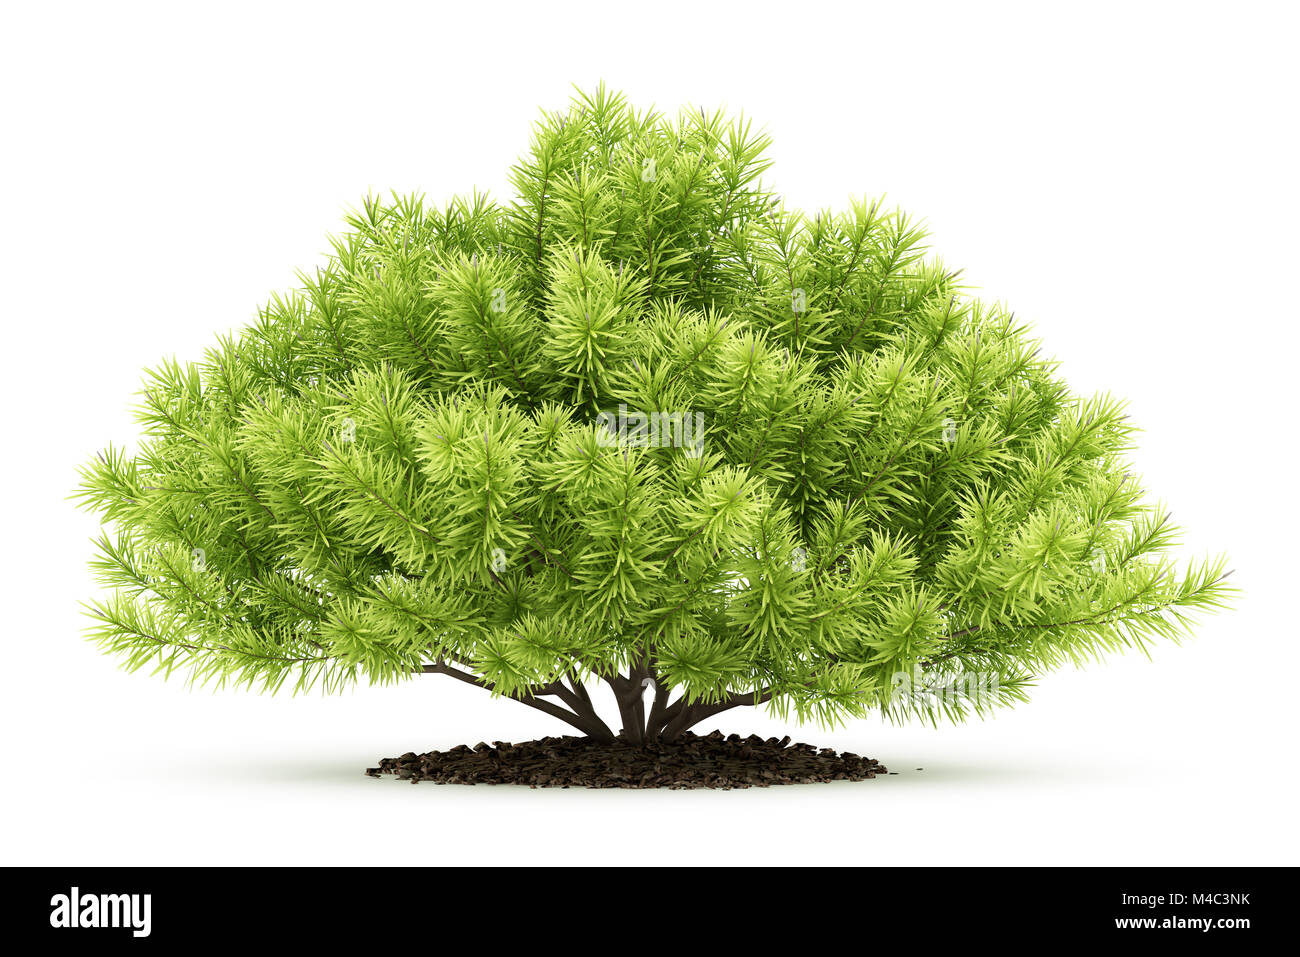 pine shrub plant isolated on white background Stock Photo